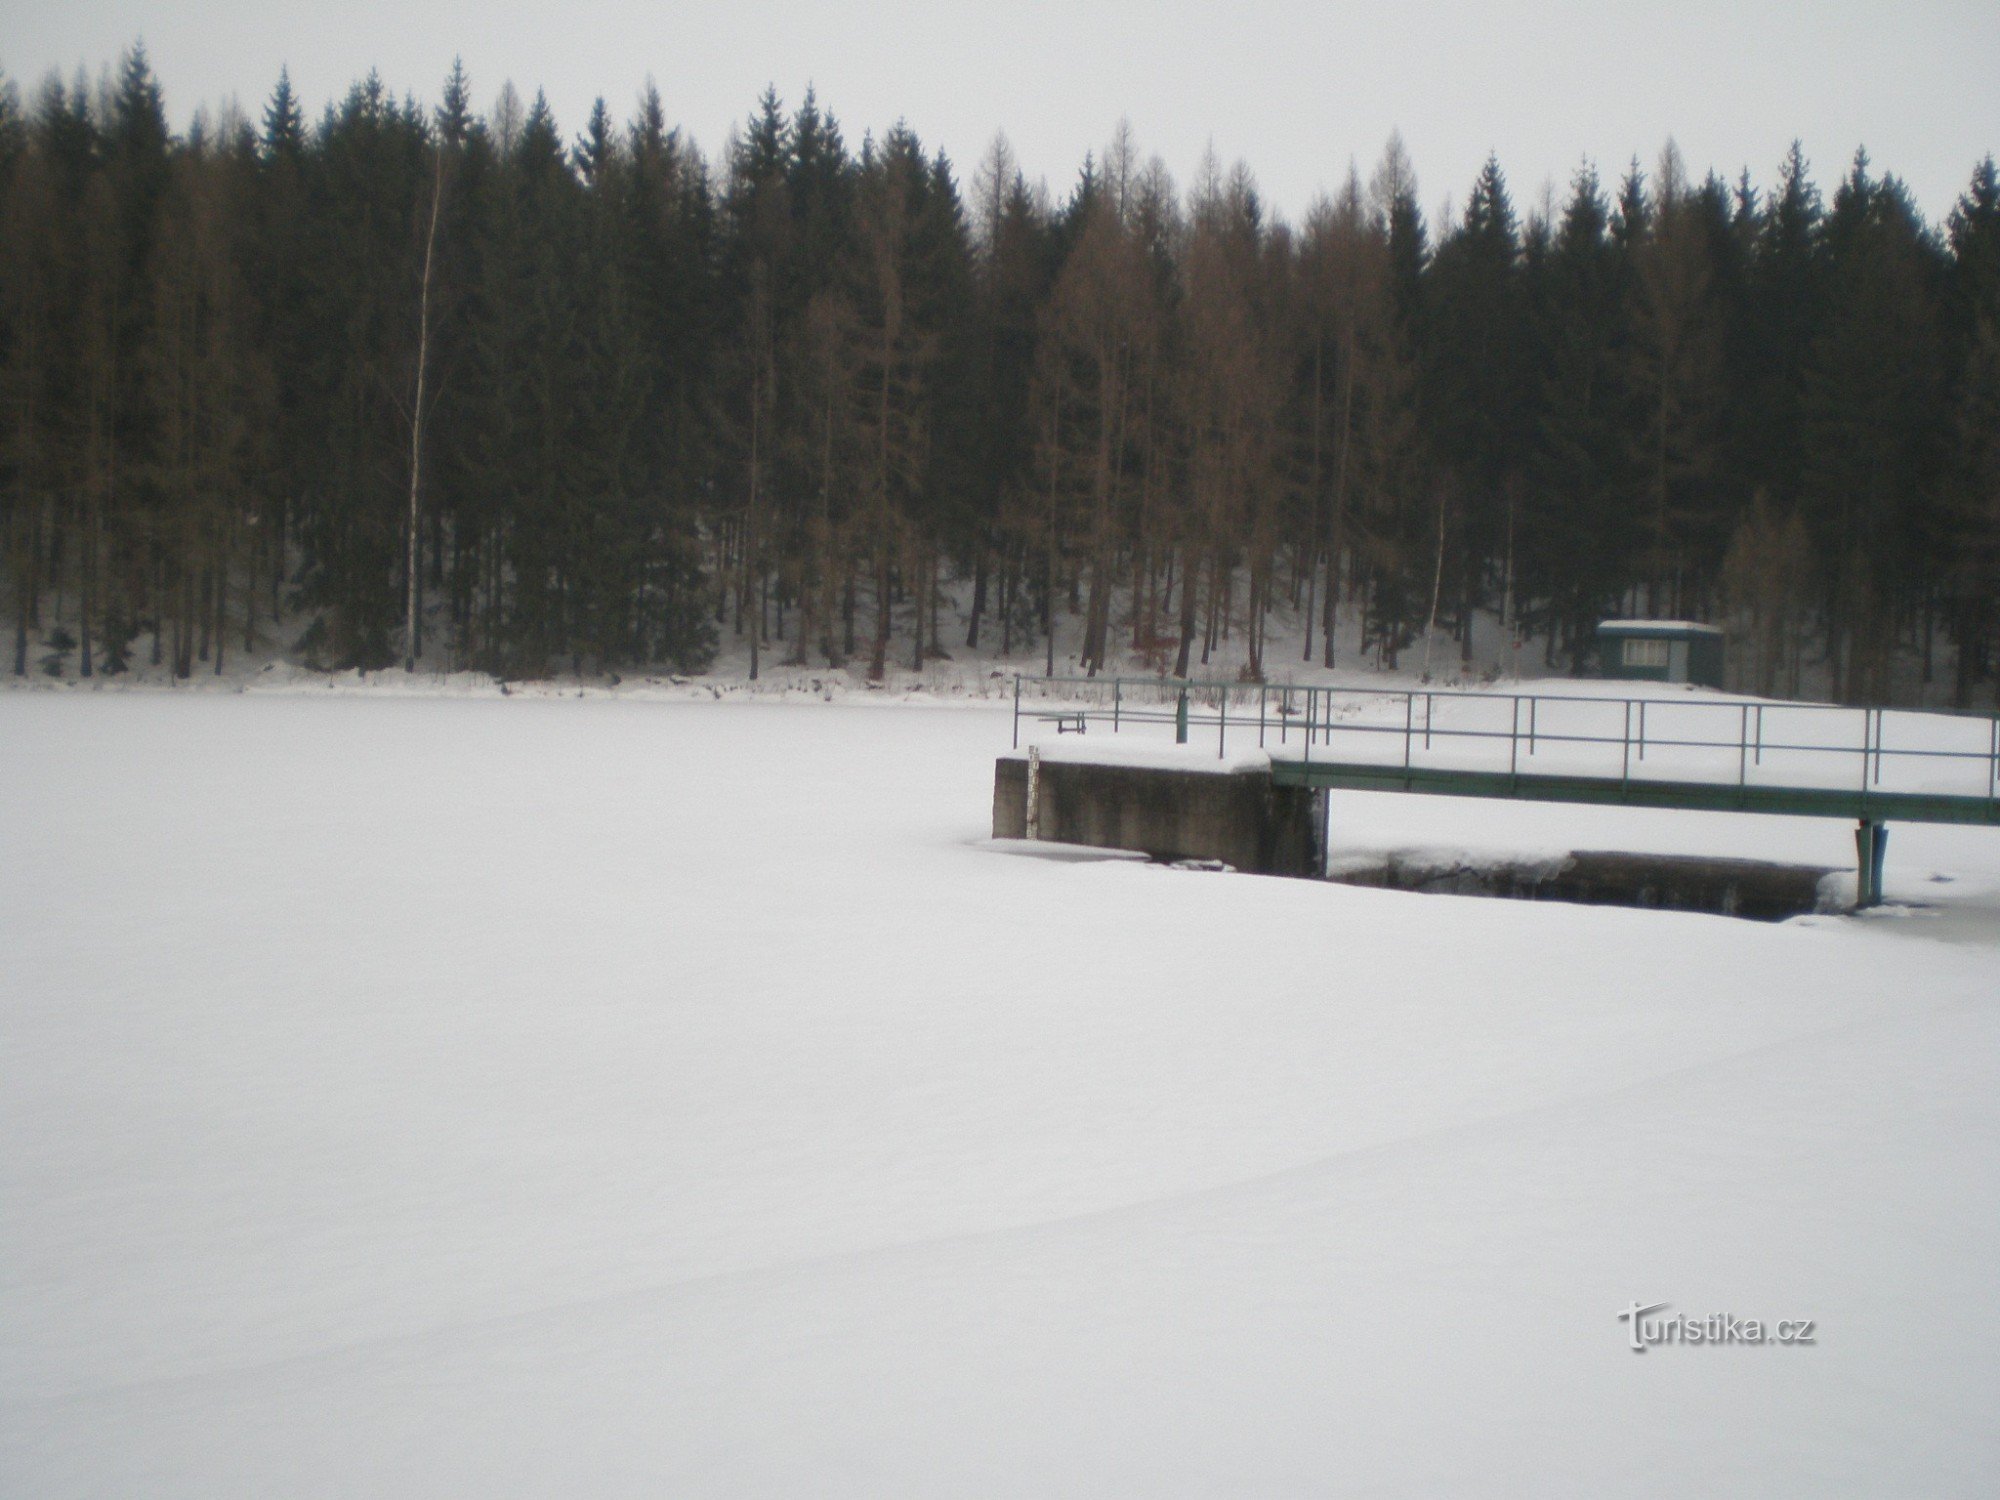 Struhový potok の貯水池